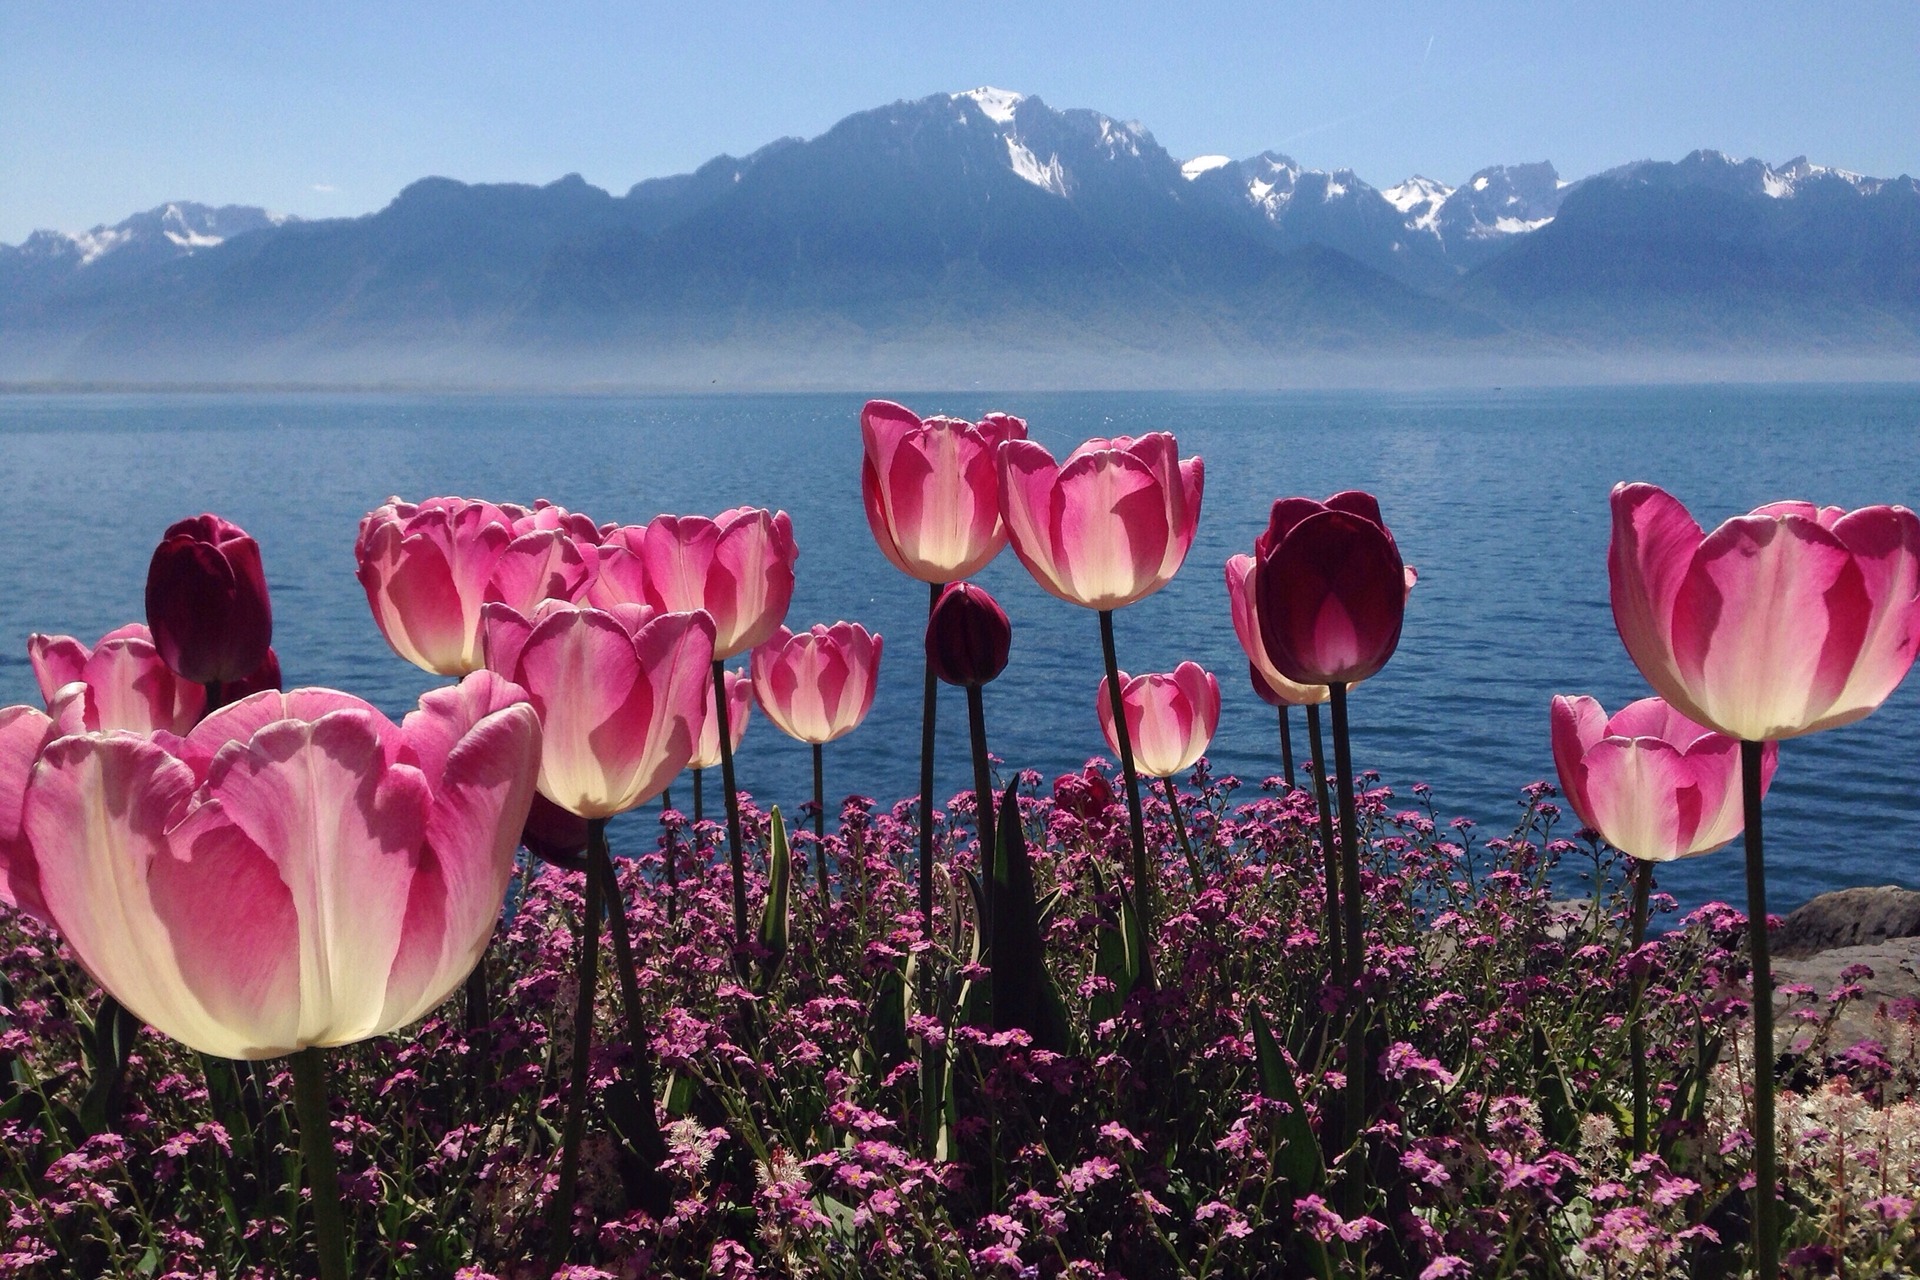 ნიადაგის პატივისცემა: წითელი ყვავილები და მთის და ტბის პეიზაჟები შვეიცარიის ზაფხულში